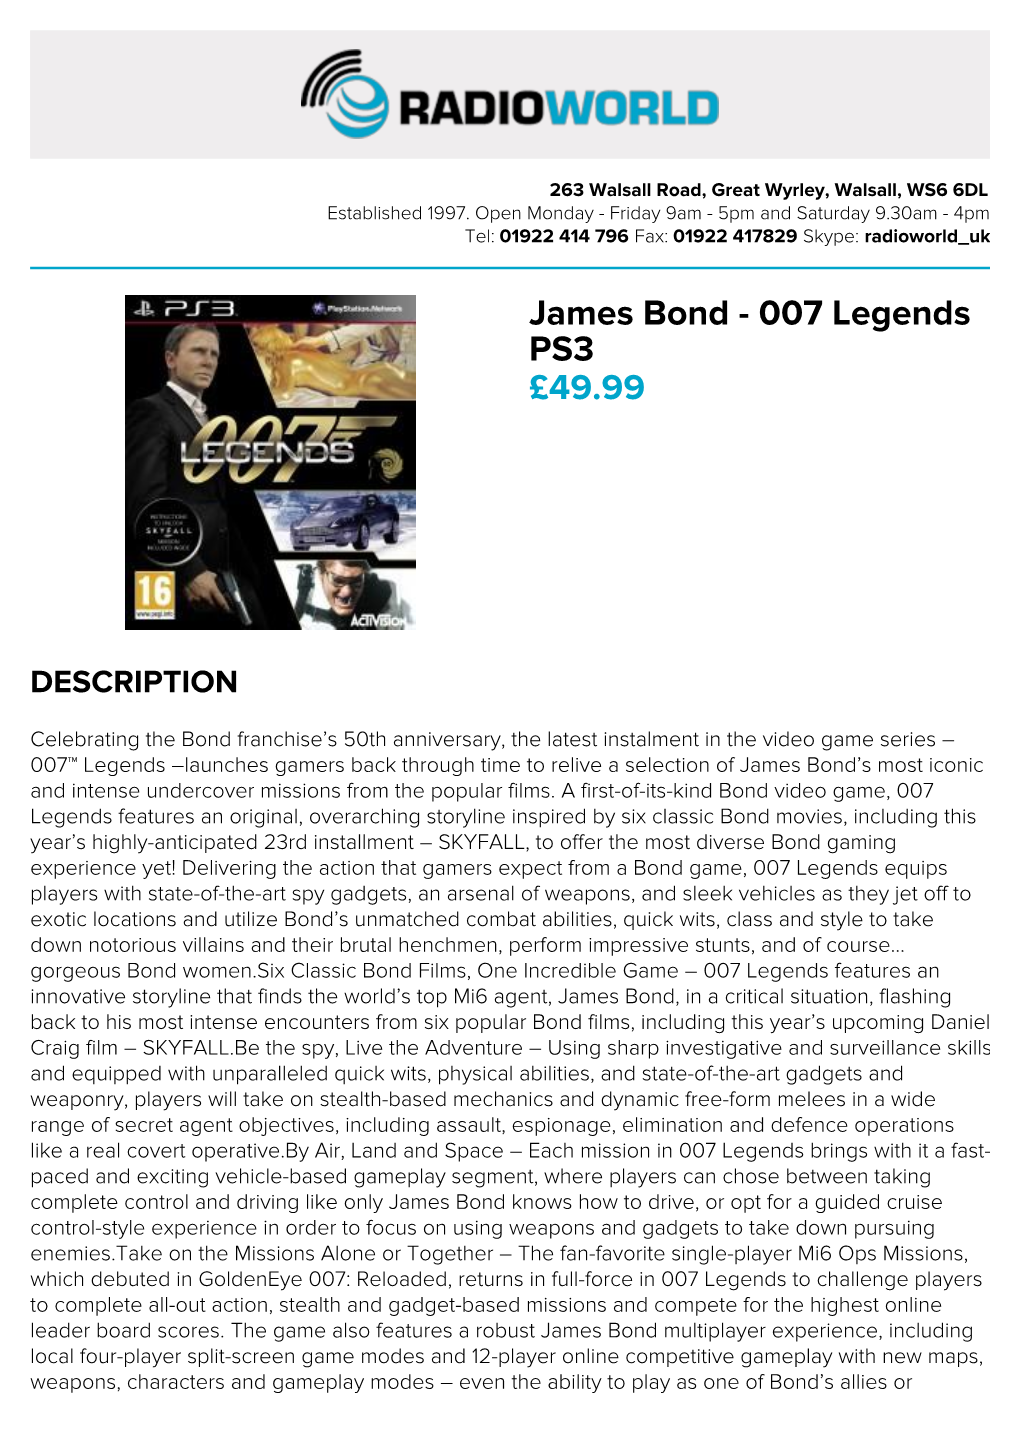 James Bond - 007 Legends PS3 £49.99